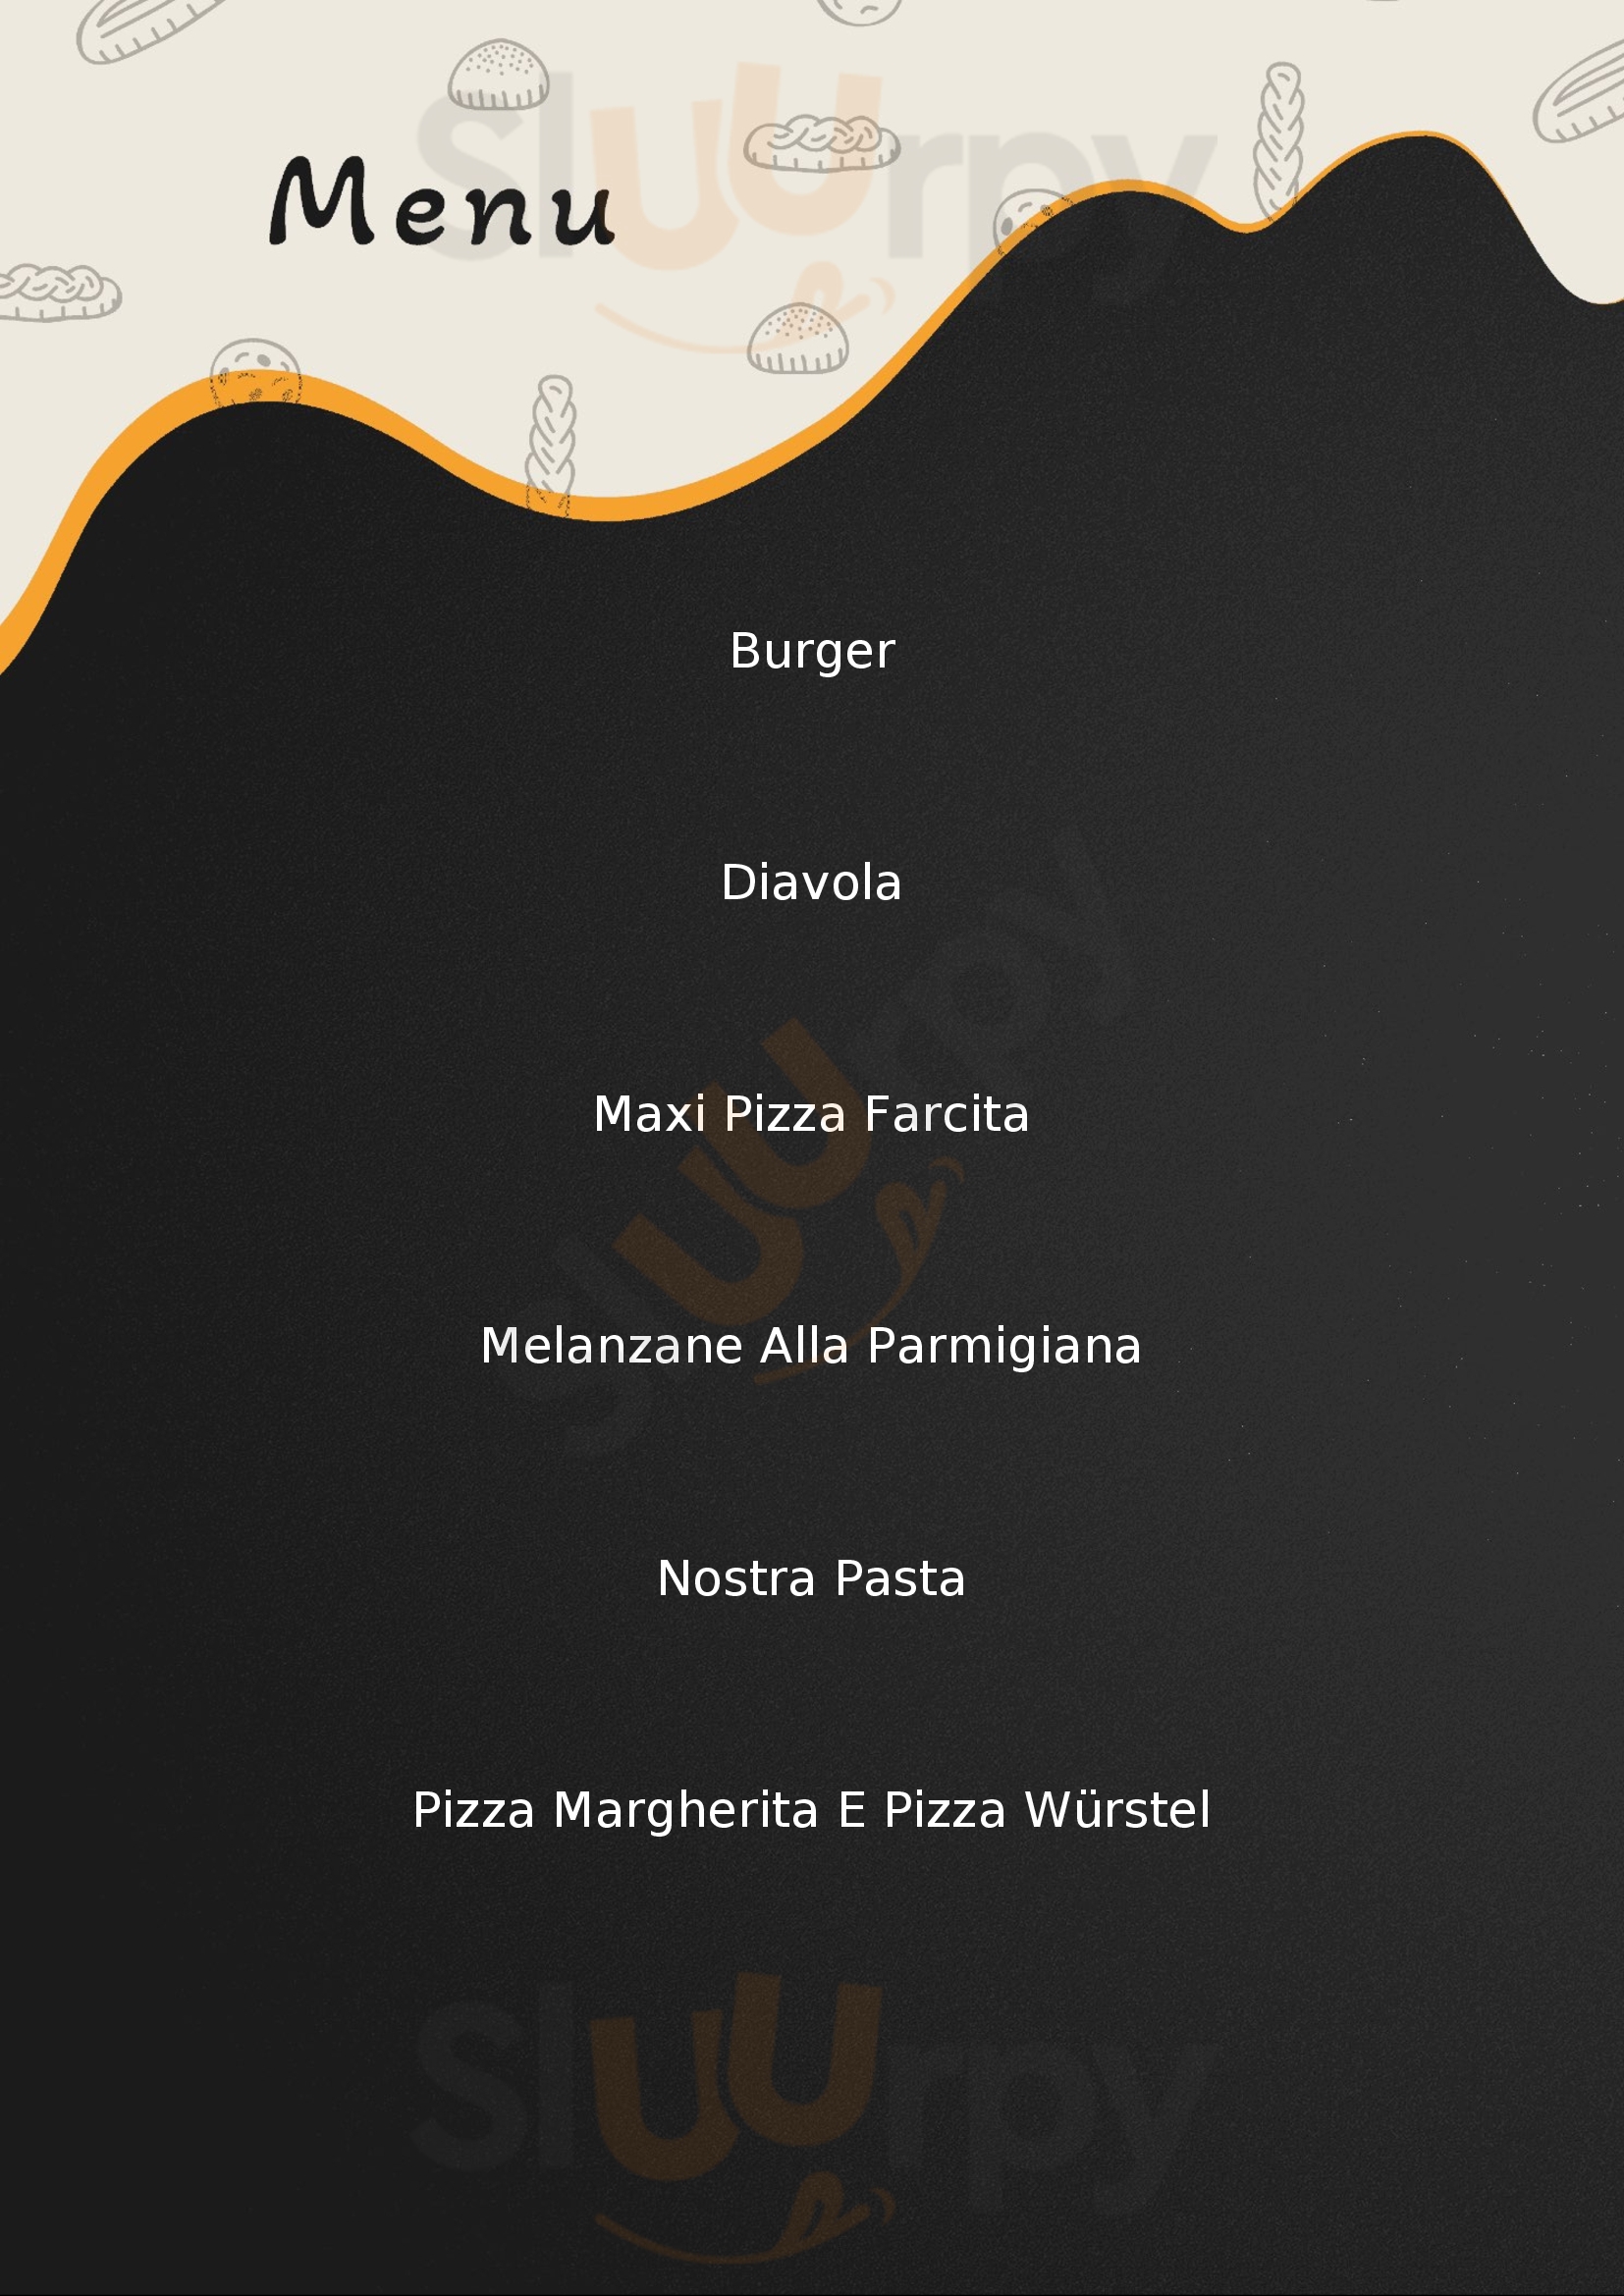 Cheli's Pizzeria per Asporto Treviso menù 1 pagina